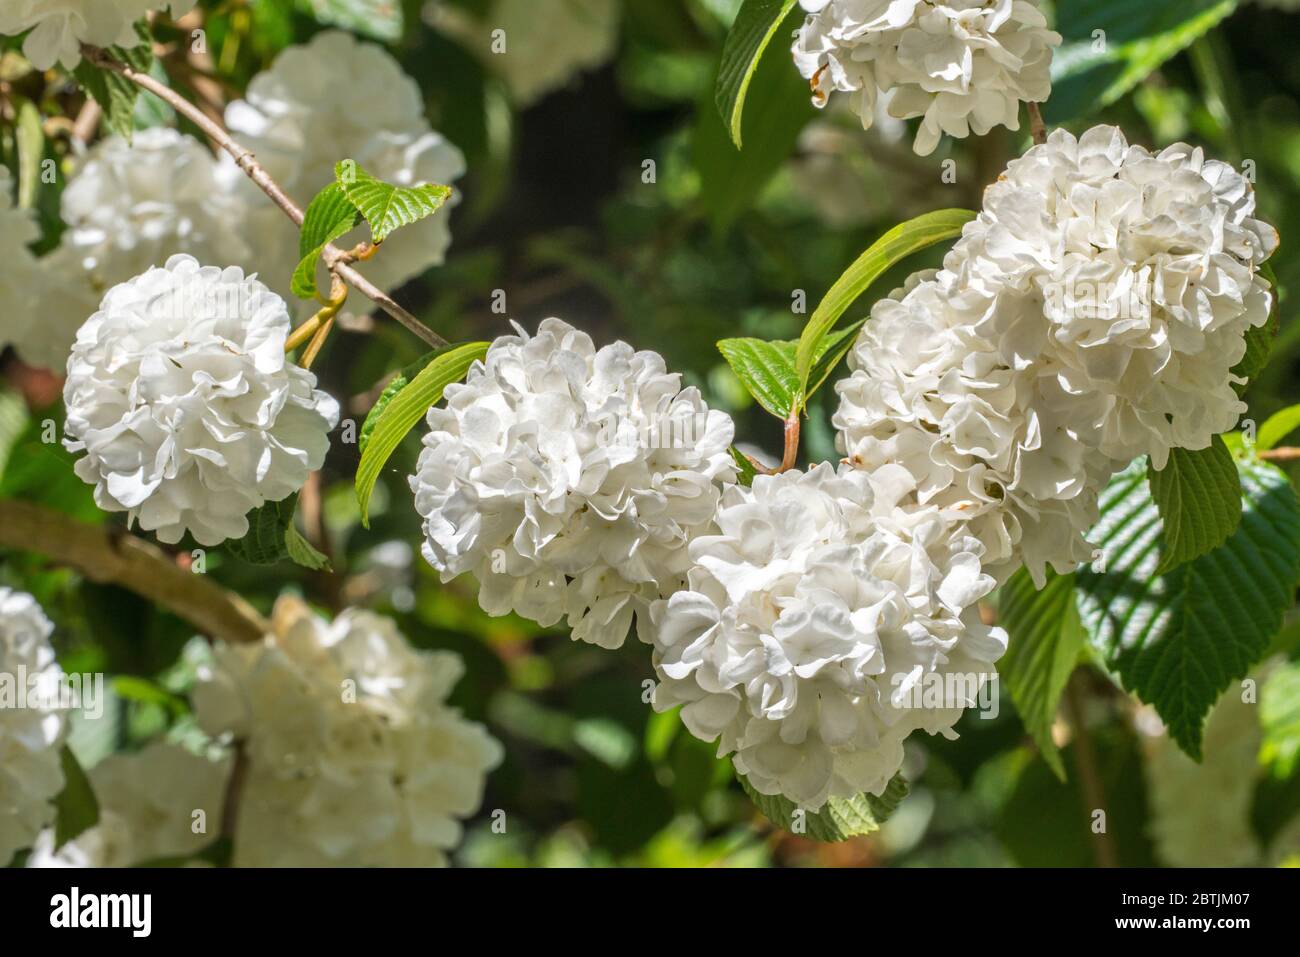 Viburnum plicatum original de Thunberg / Viburnum tomentosum stérile, gros plan de fleurs blanches au printemps Banque D'Images